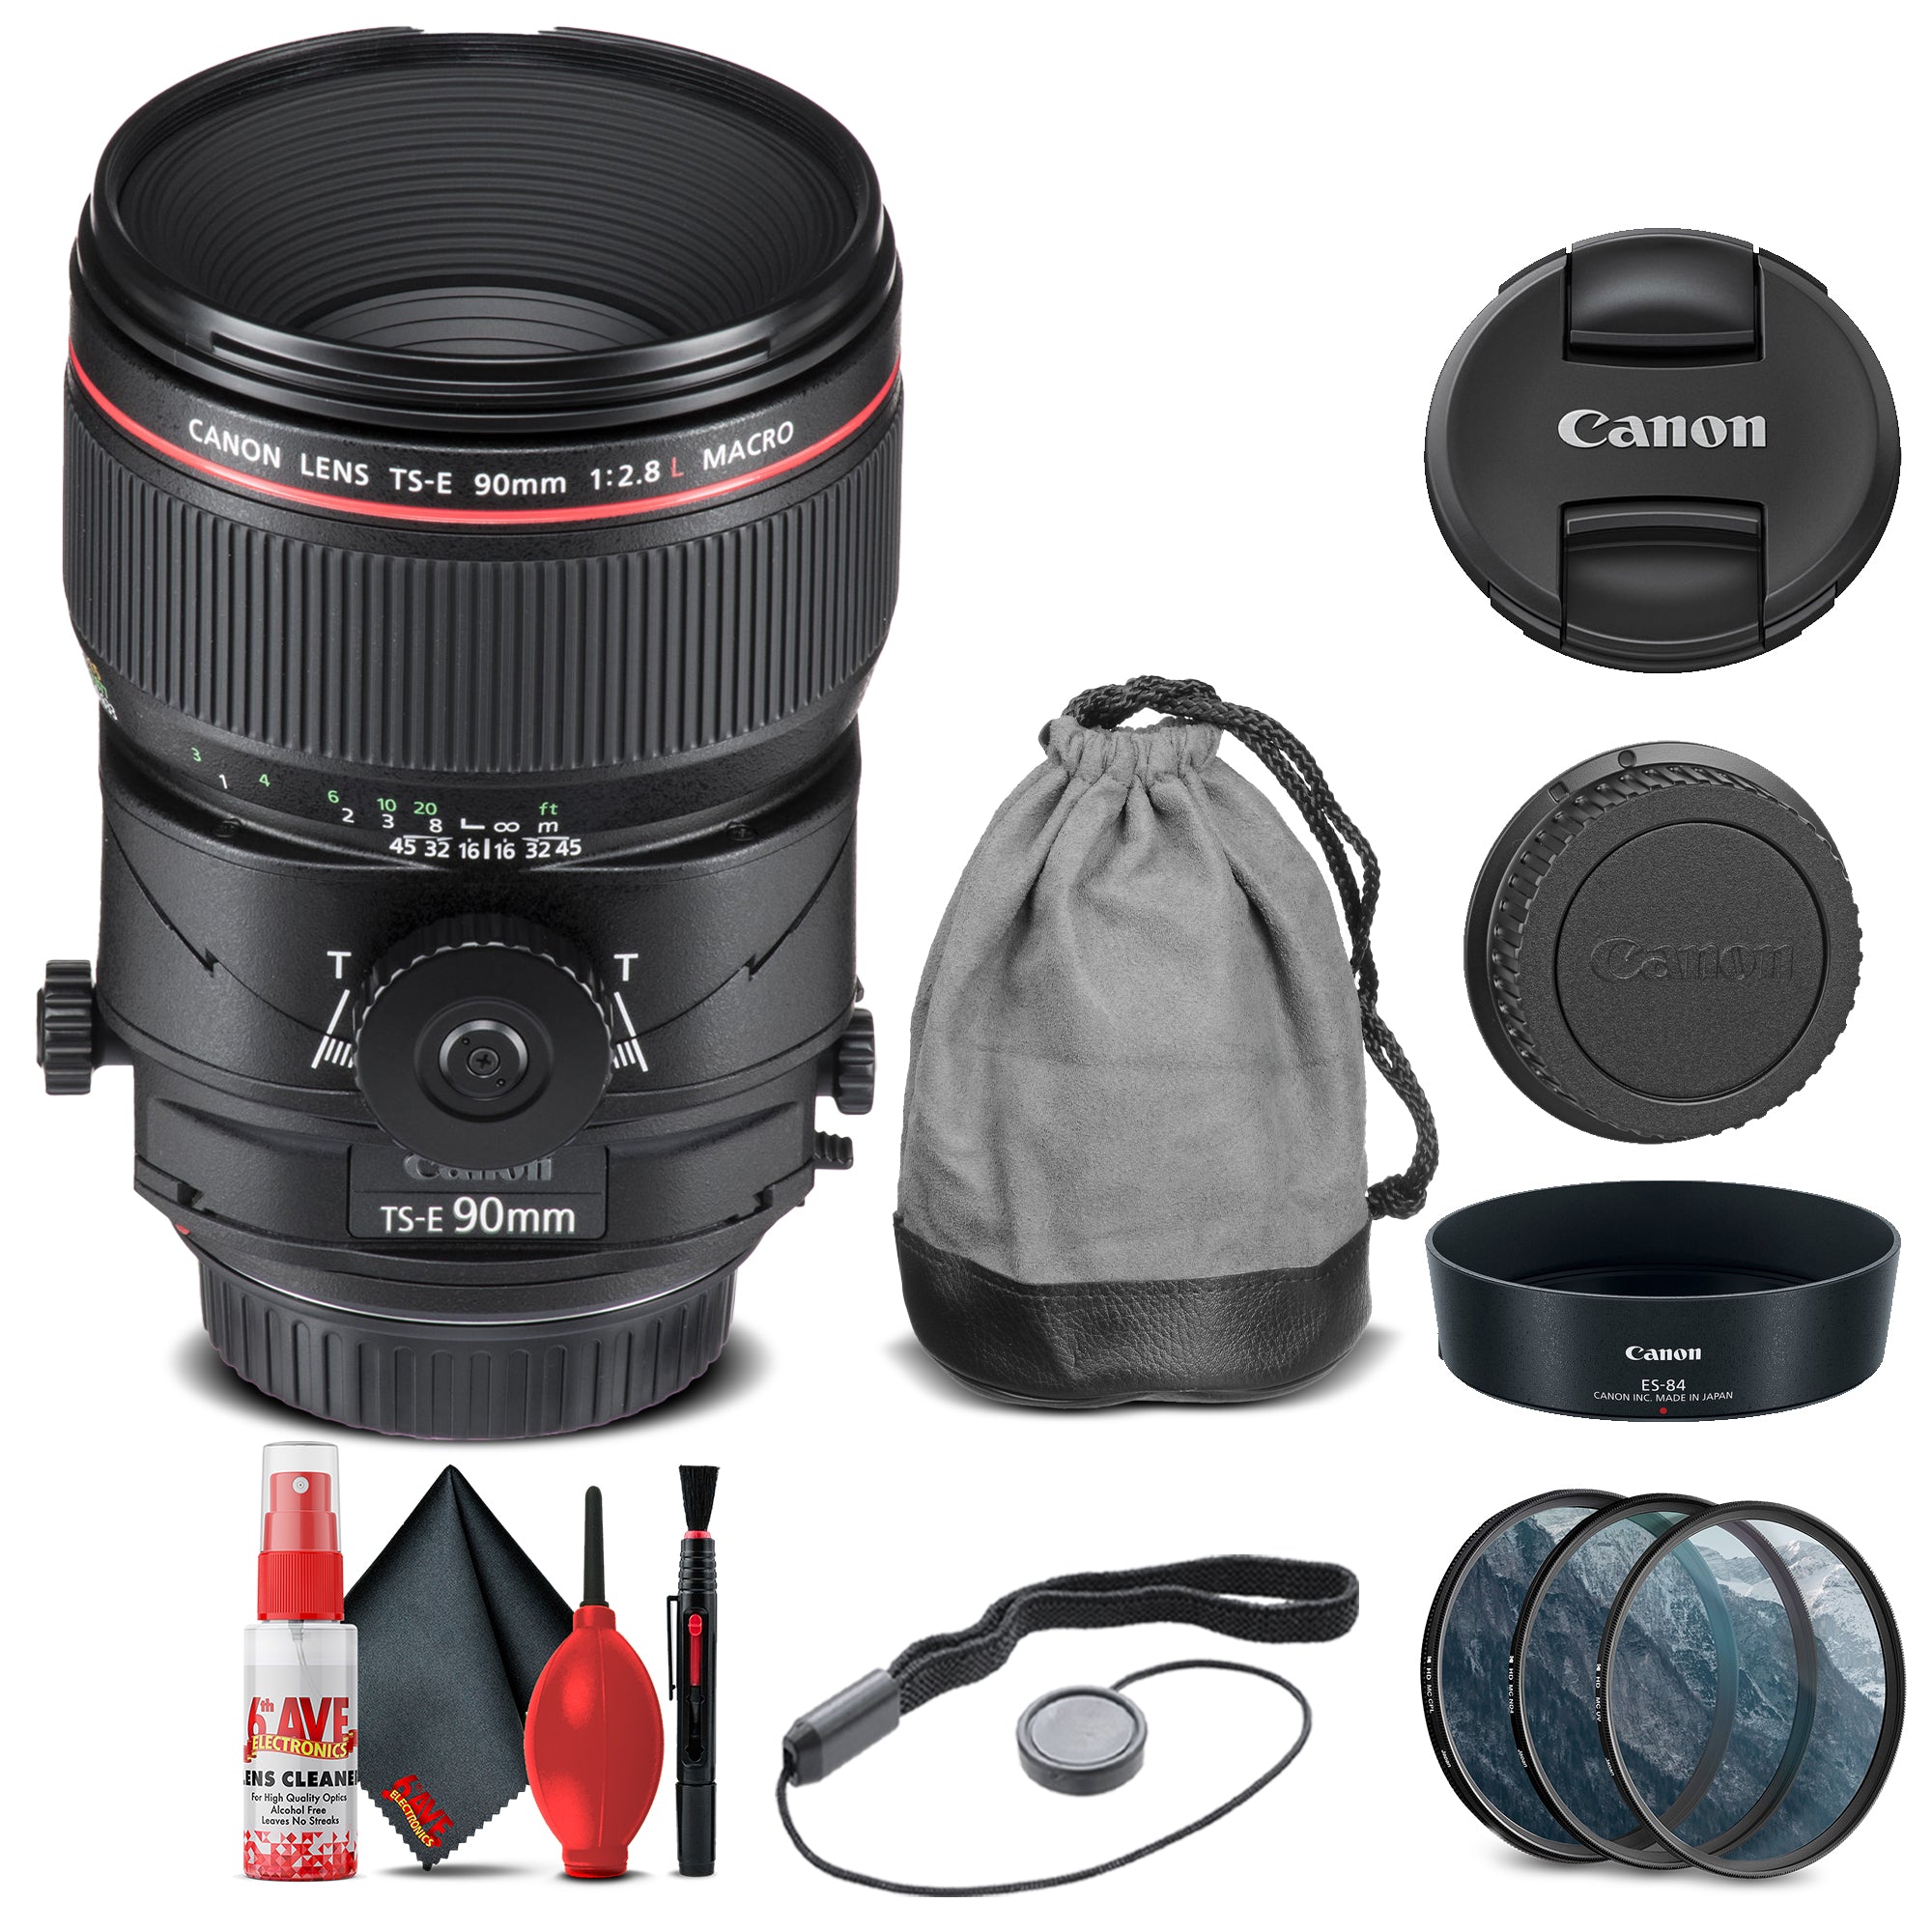 Canon TS-E 90mm f/2.8L Macro Tilt-Shift Lens (2274C002) + Filter Kit + More